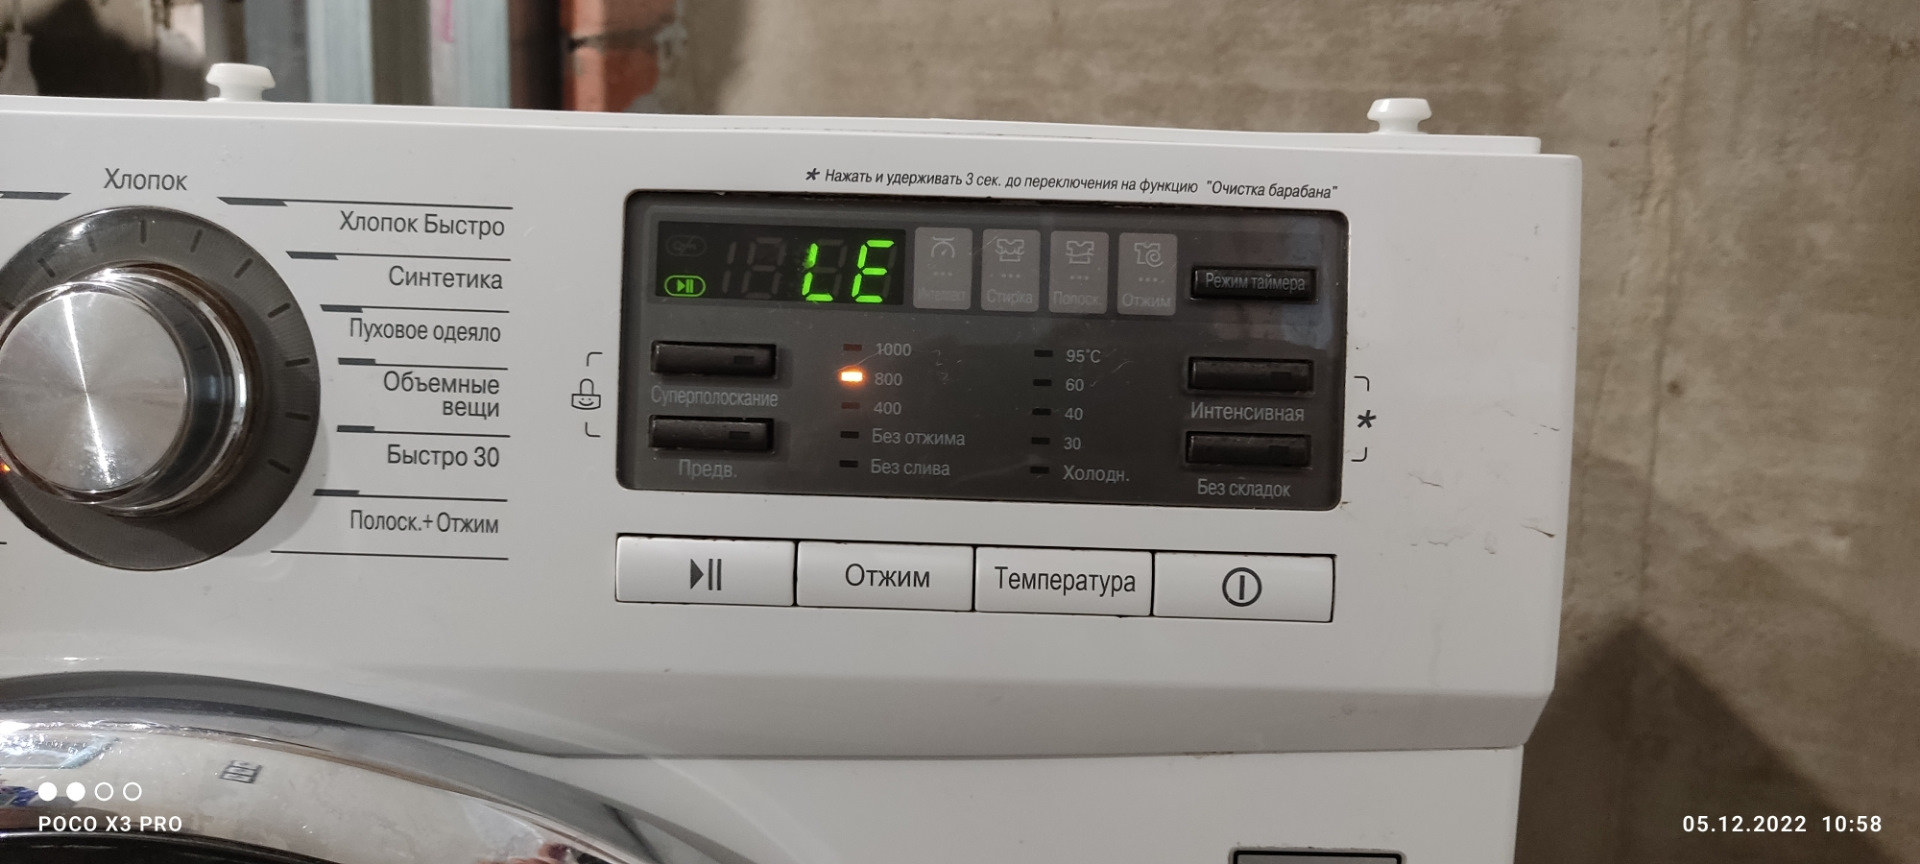 функция steam в стиральной машине что это такое фото 112